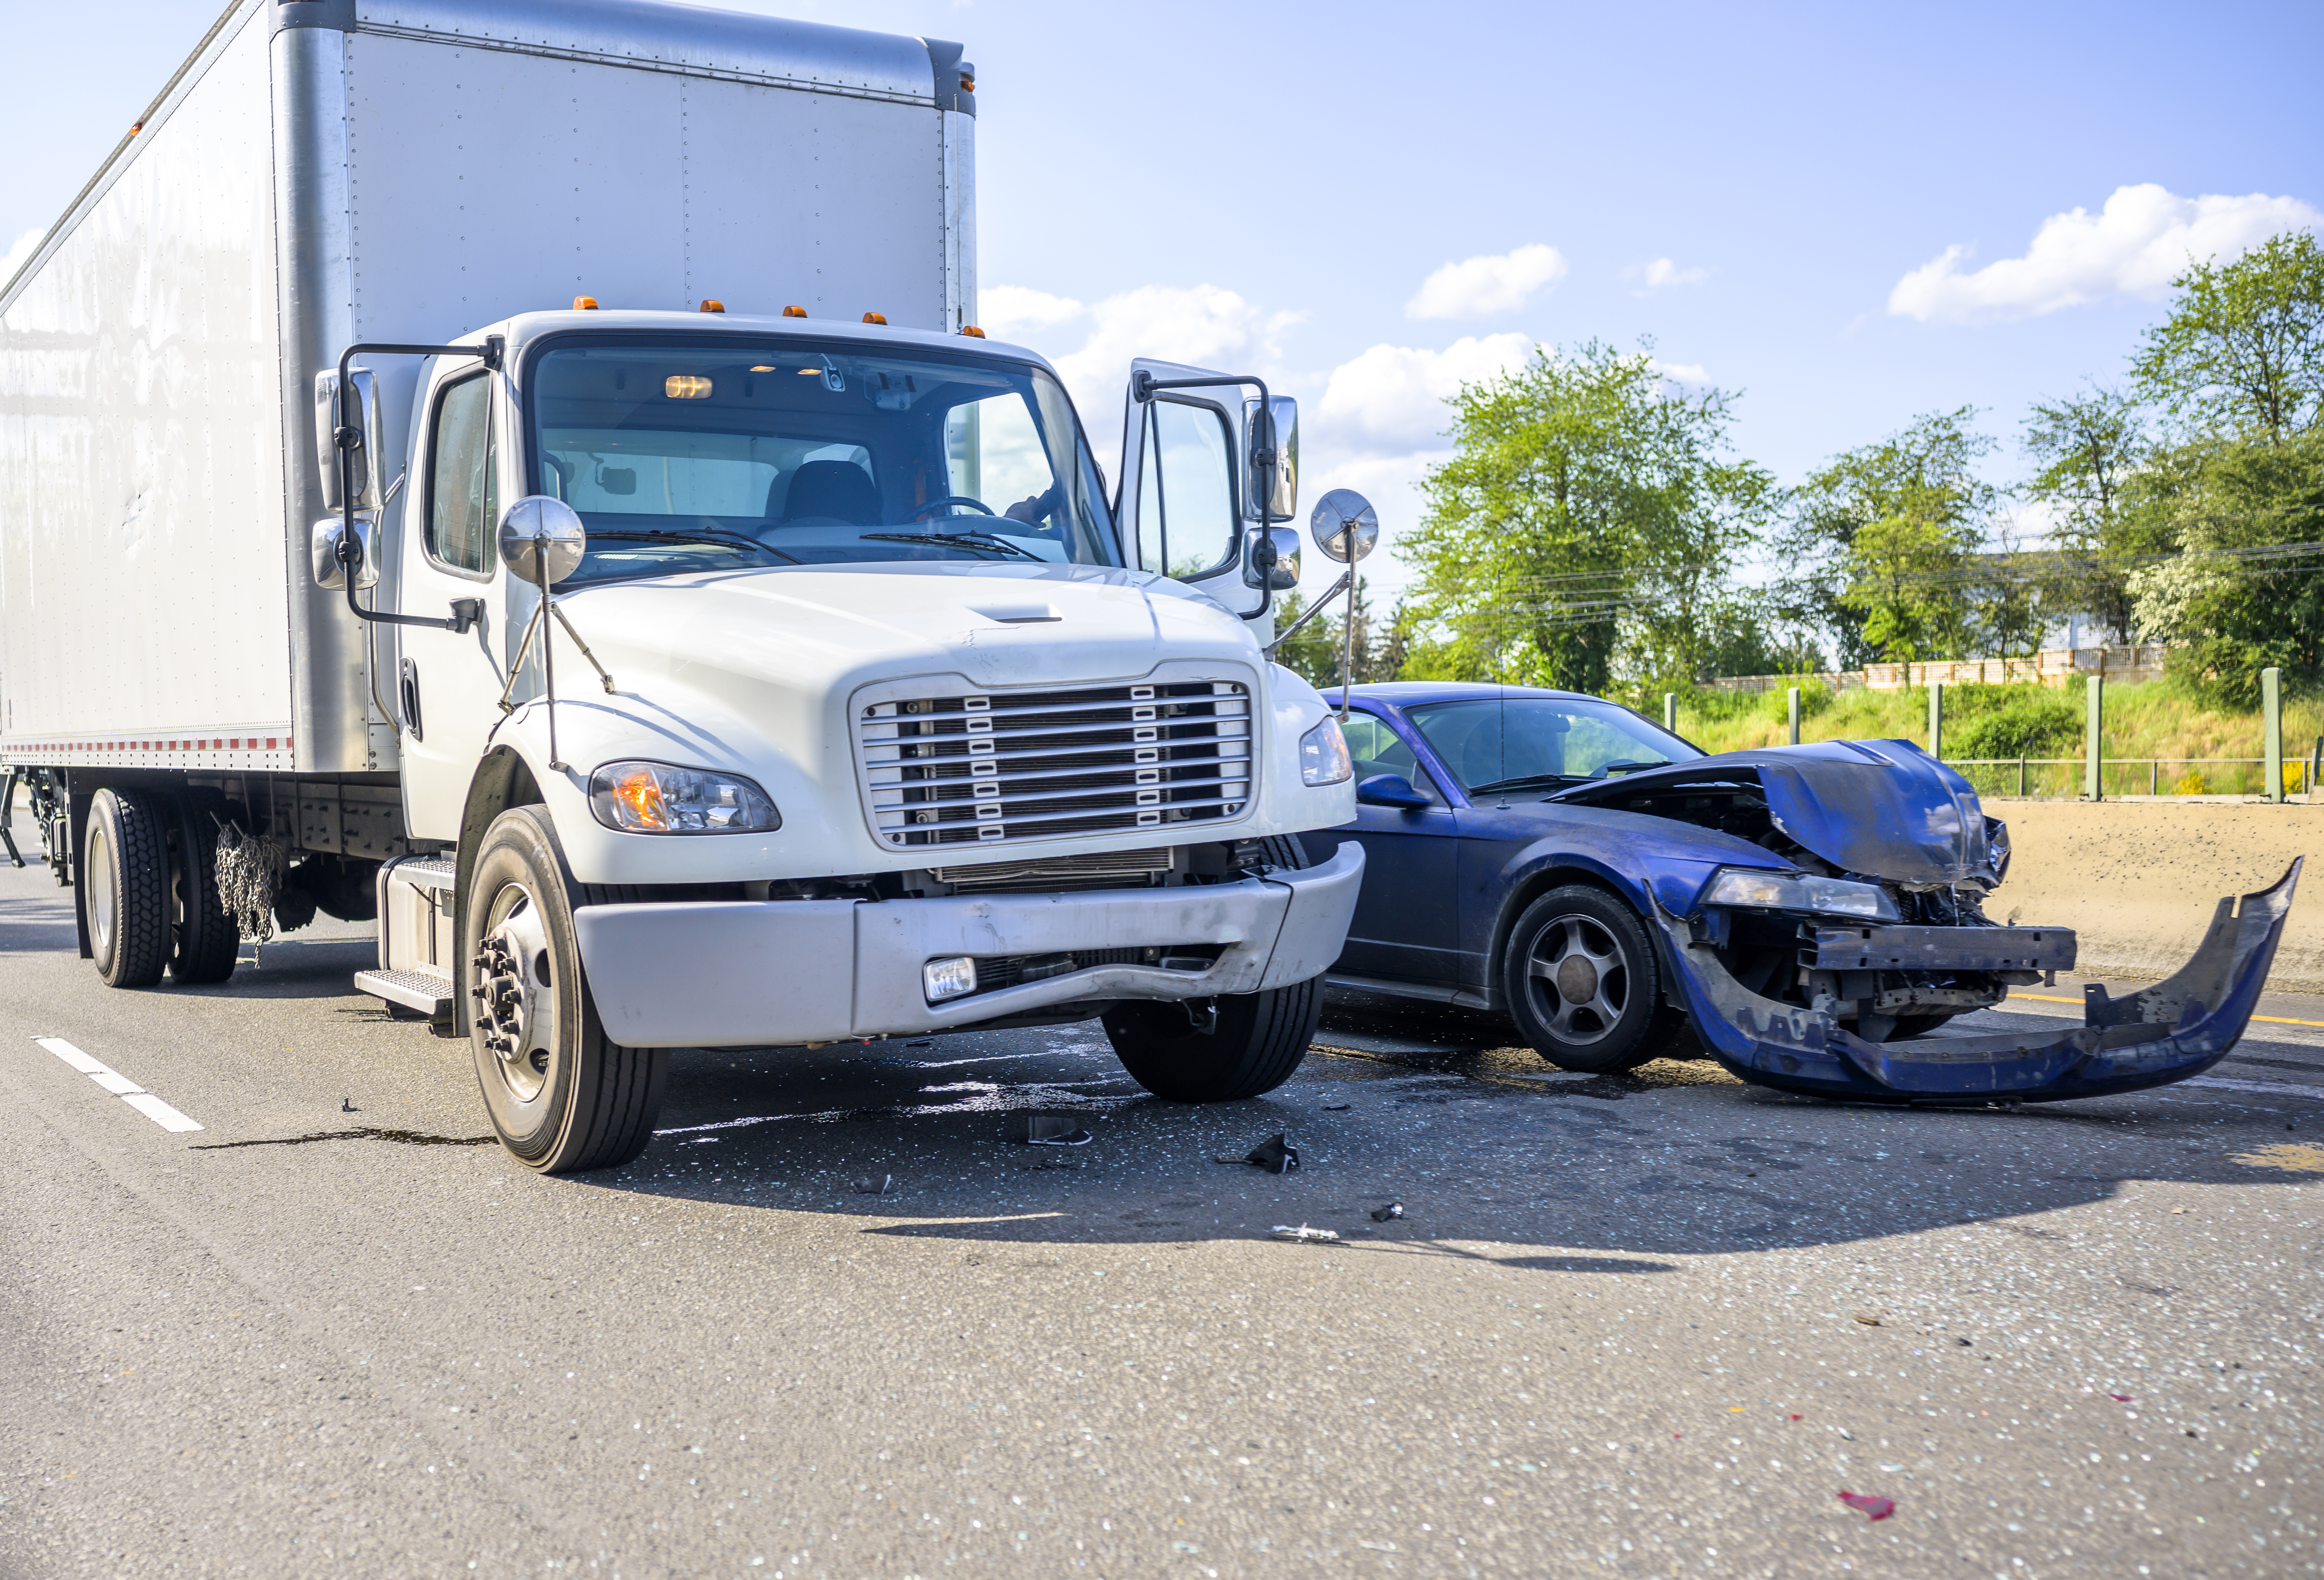 ¿Se ha lesionado recientemente en un accidente de camión comercial? Tenemos las cualidades que busca en el mejor abogado de accidentes de camiones de Waco.